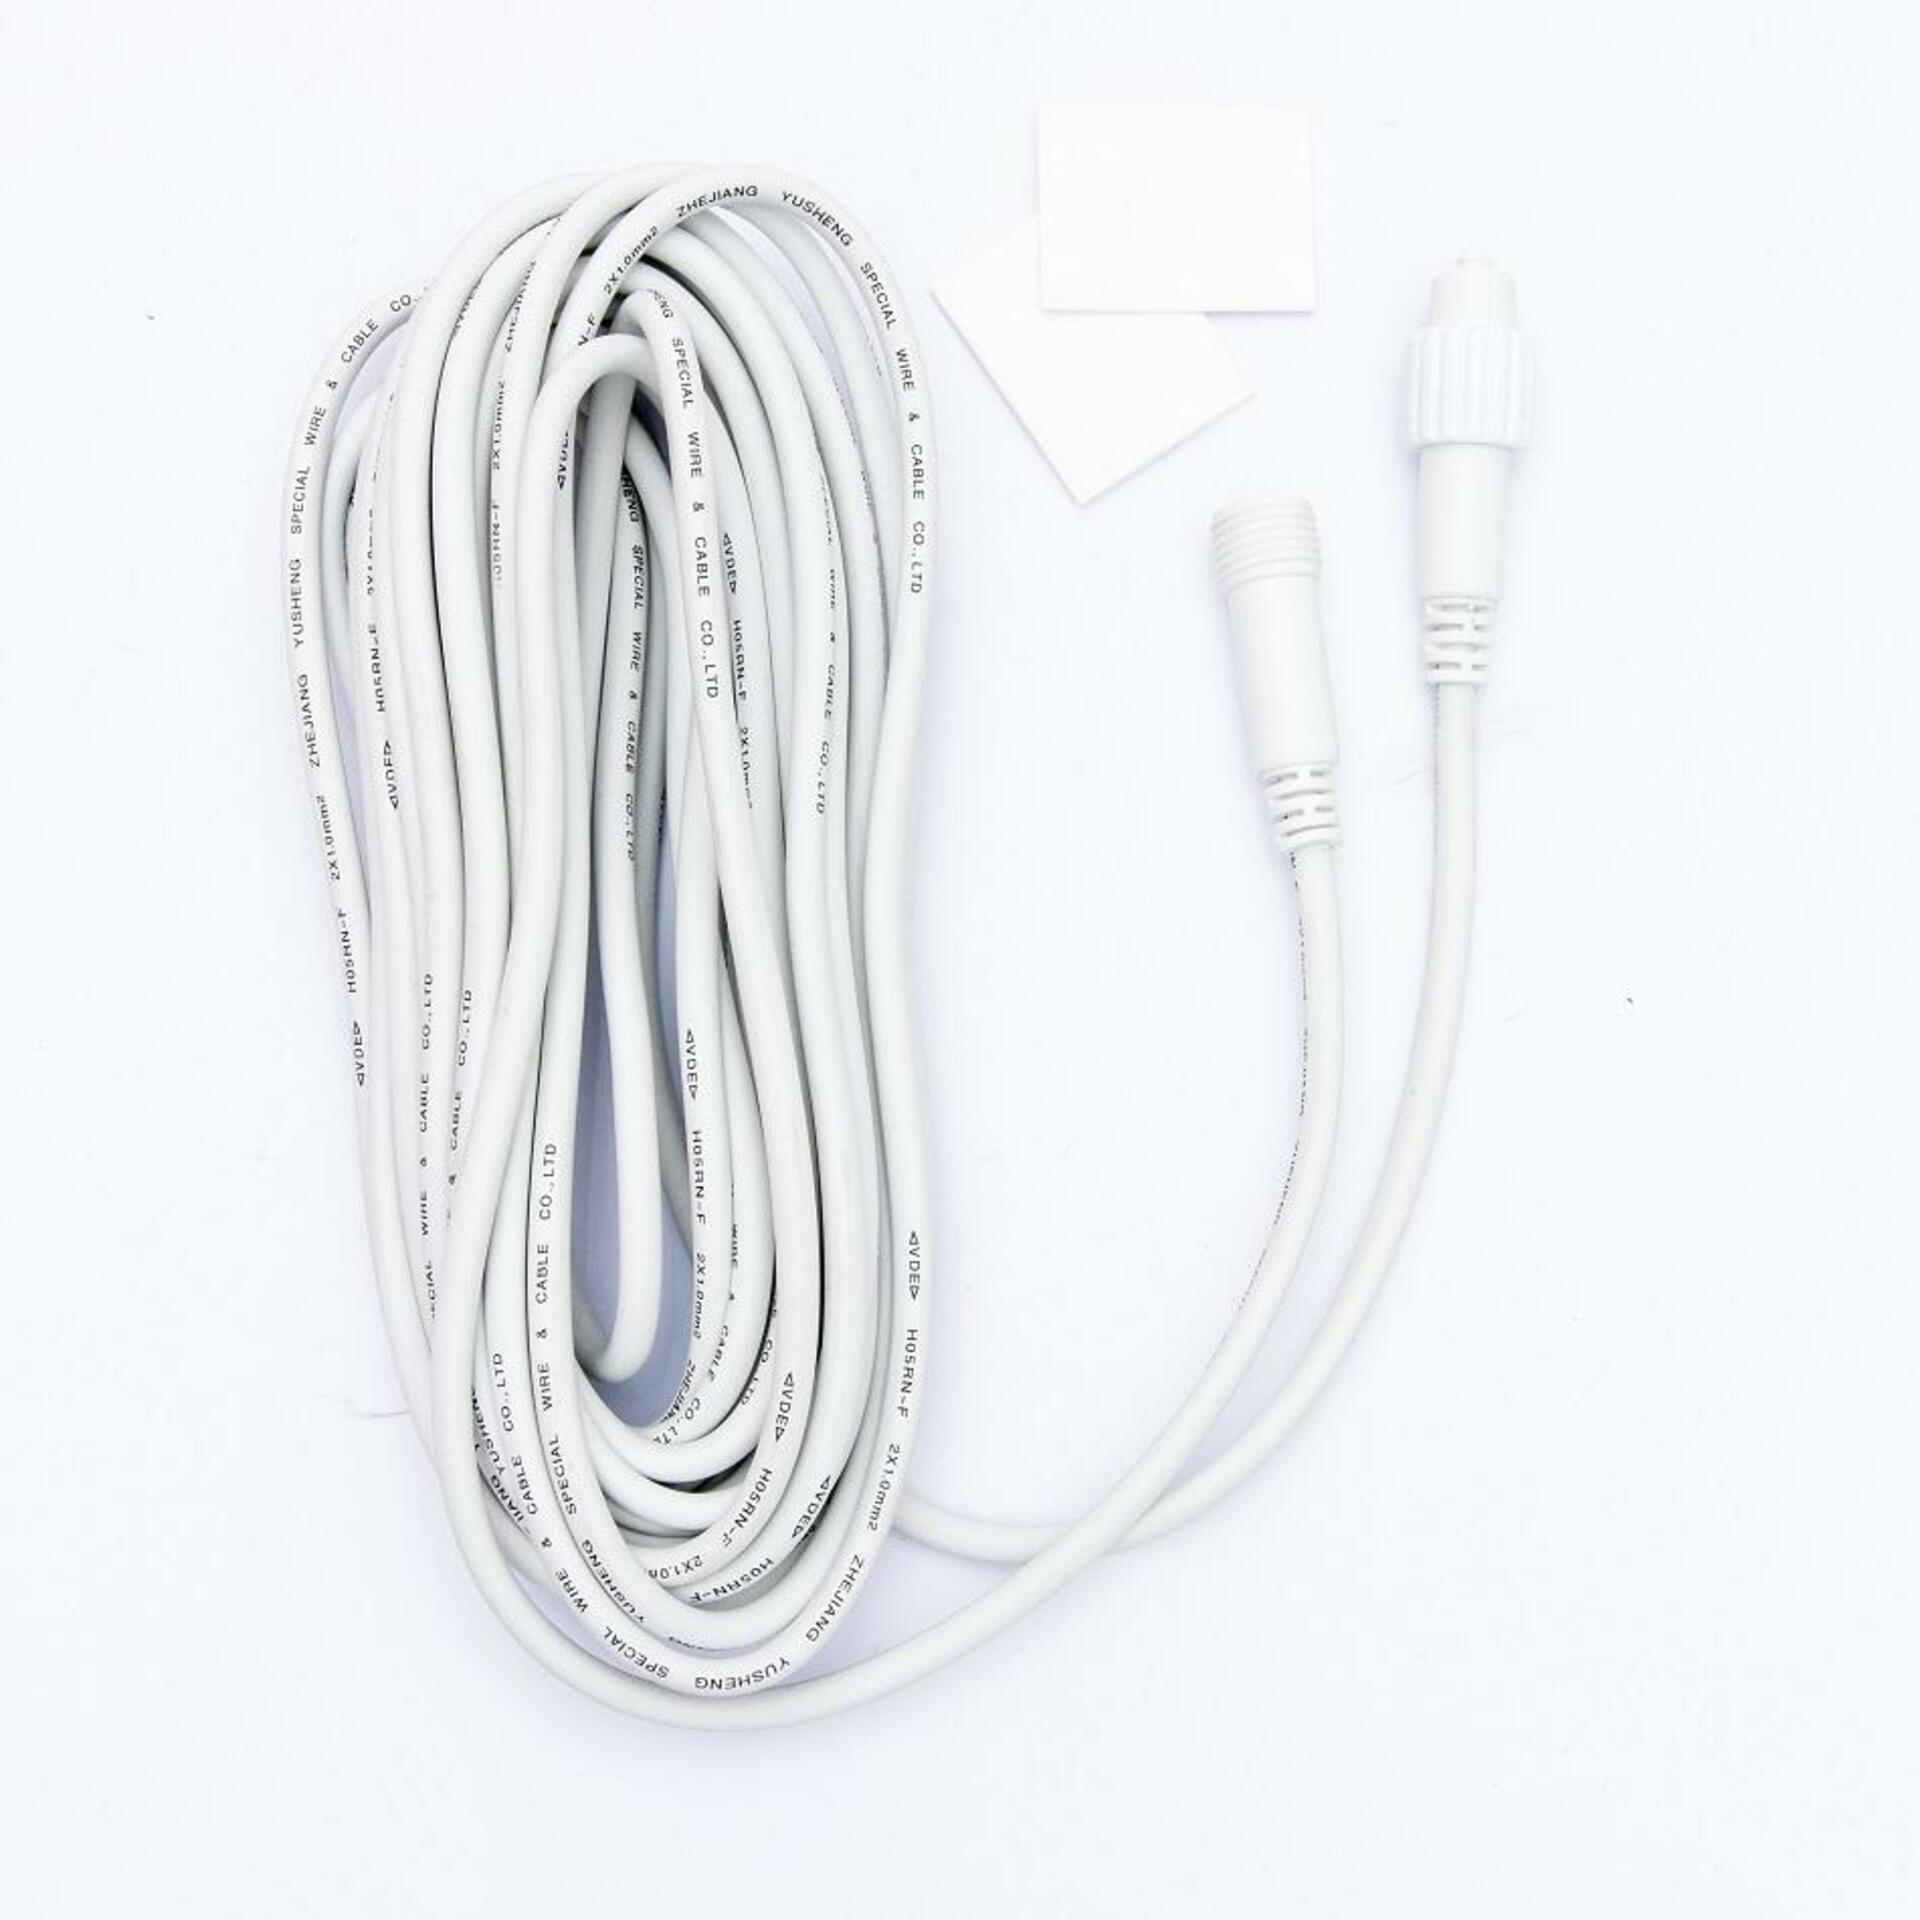 DecoLED Prodlužovací kabel - bílý, 10m EFX010